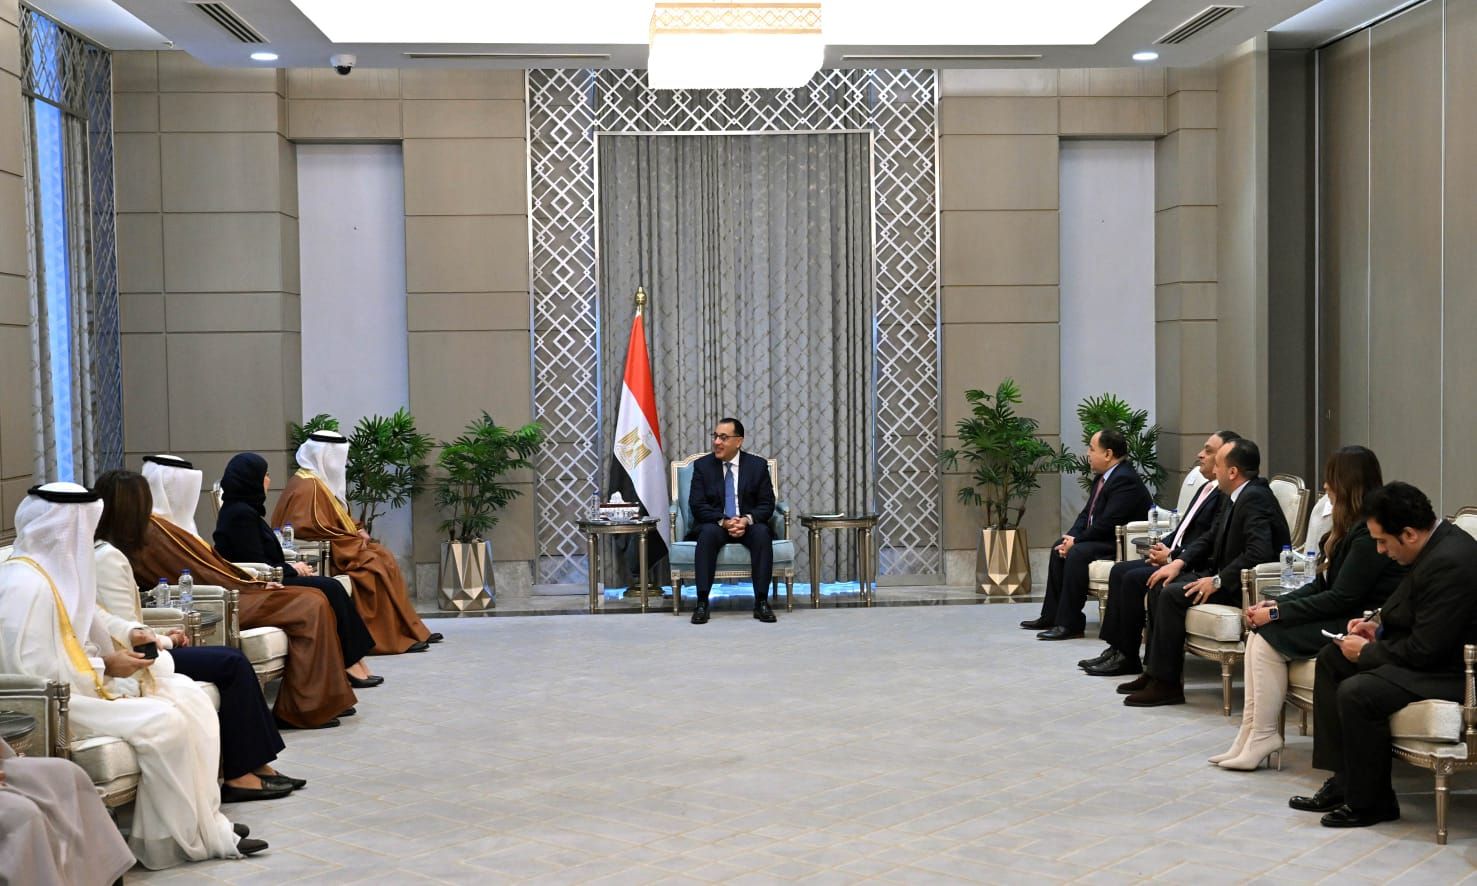 مصر والبحرين تتفقان على زيادة حجم التبادل التجاري